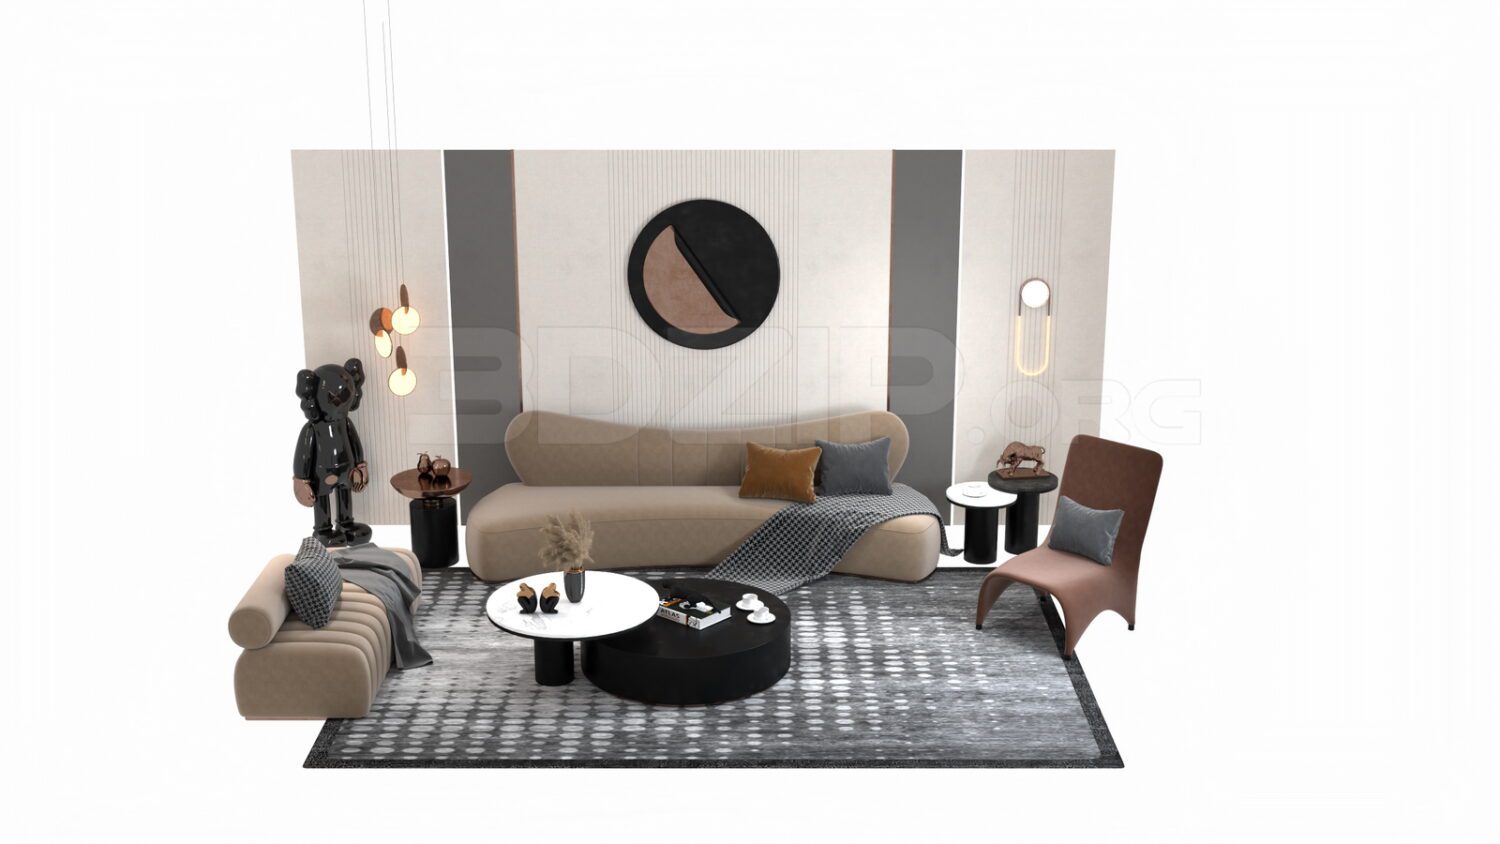 3584. Free 3D Sofa Model Download